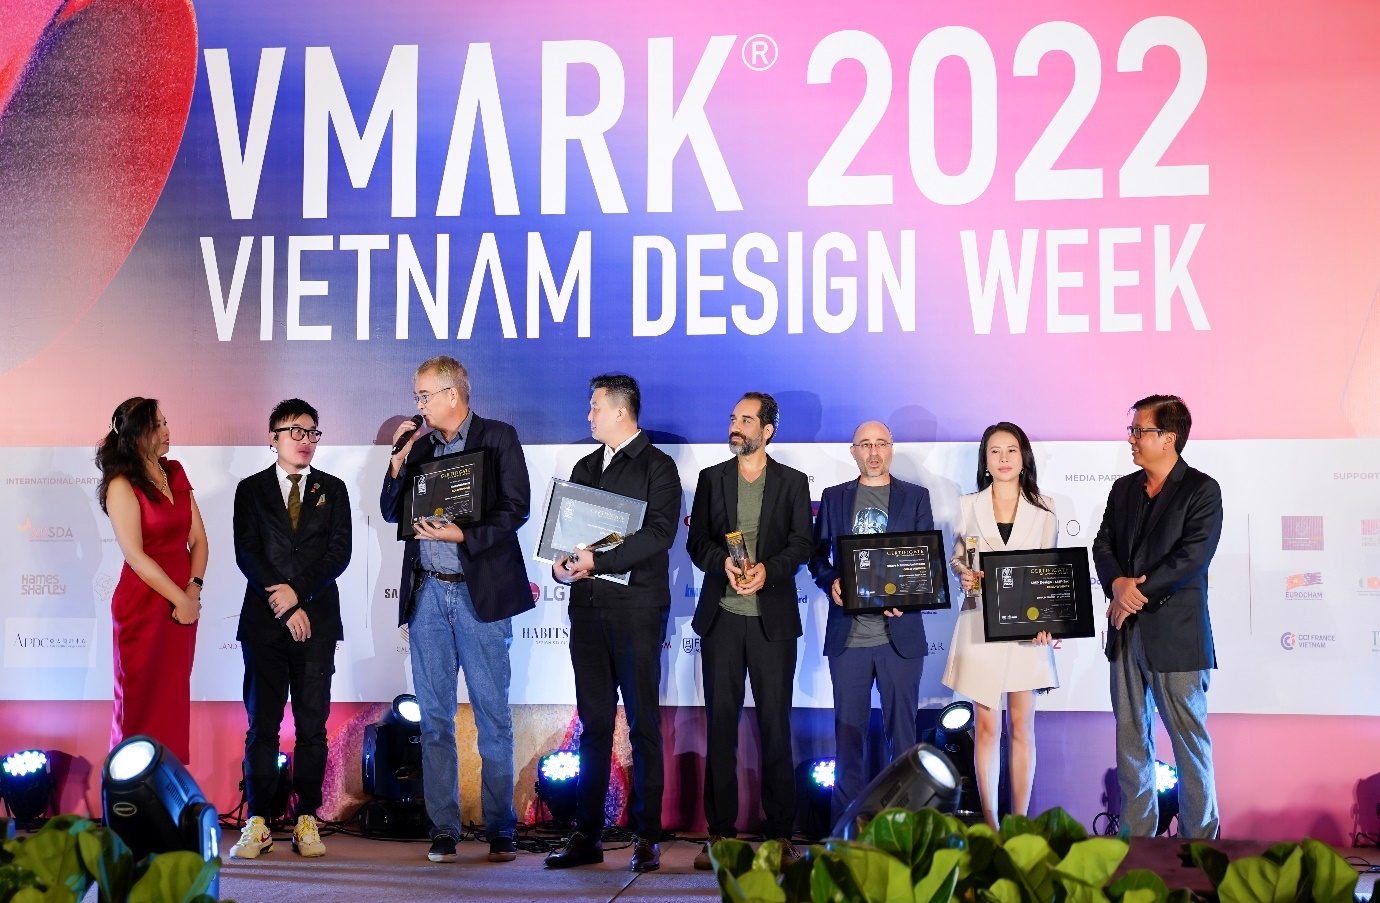 LMP Design giành 2 giải vàng danh giá tại VMARK 2022